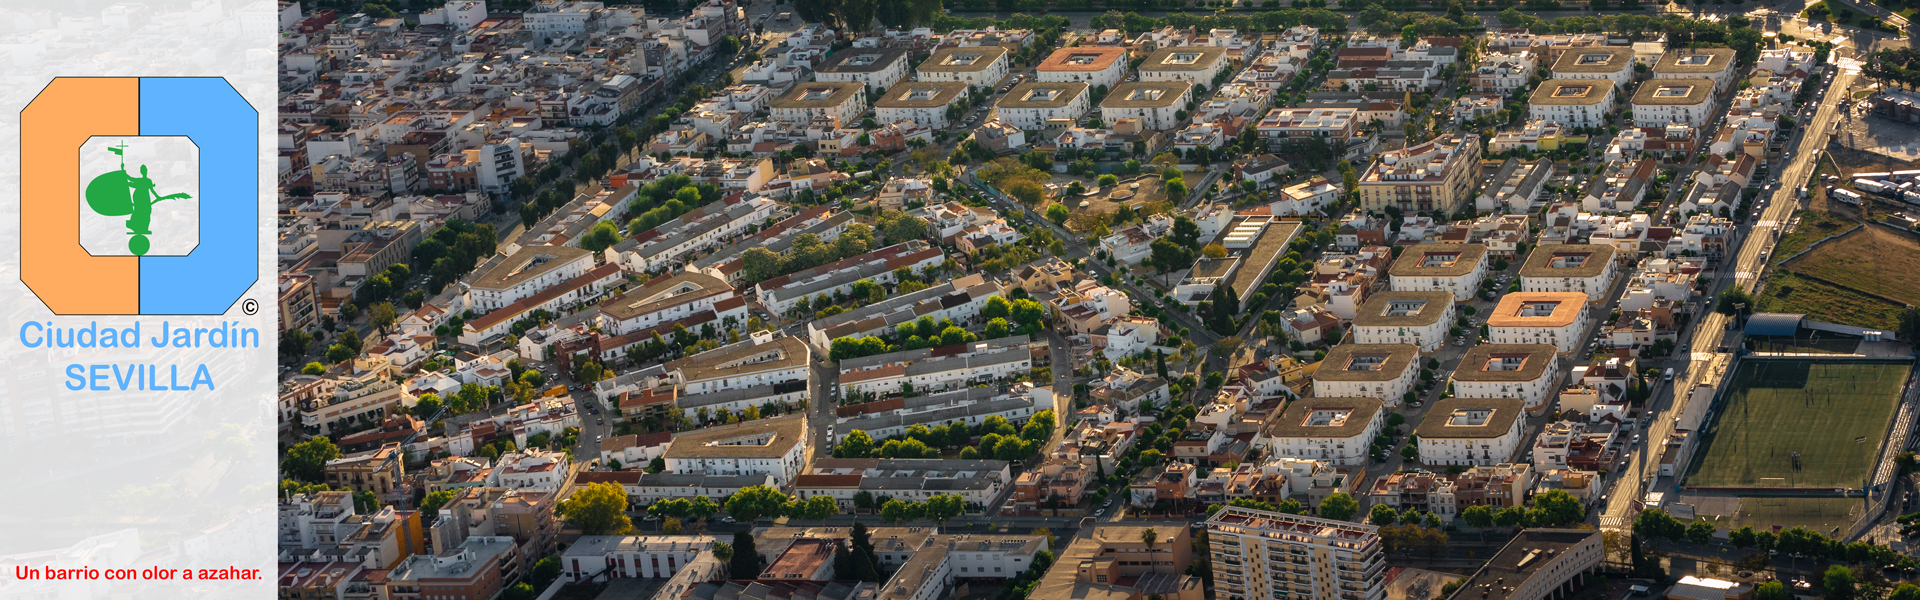 Ciudad Jardín Sevilla